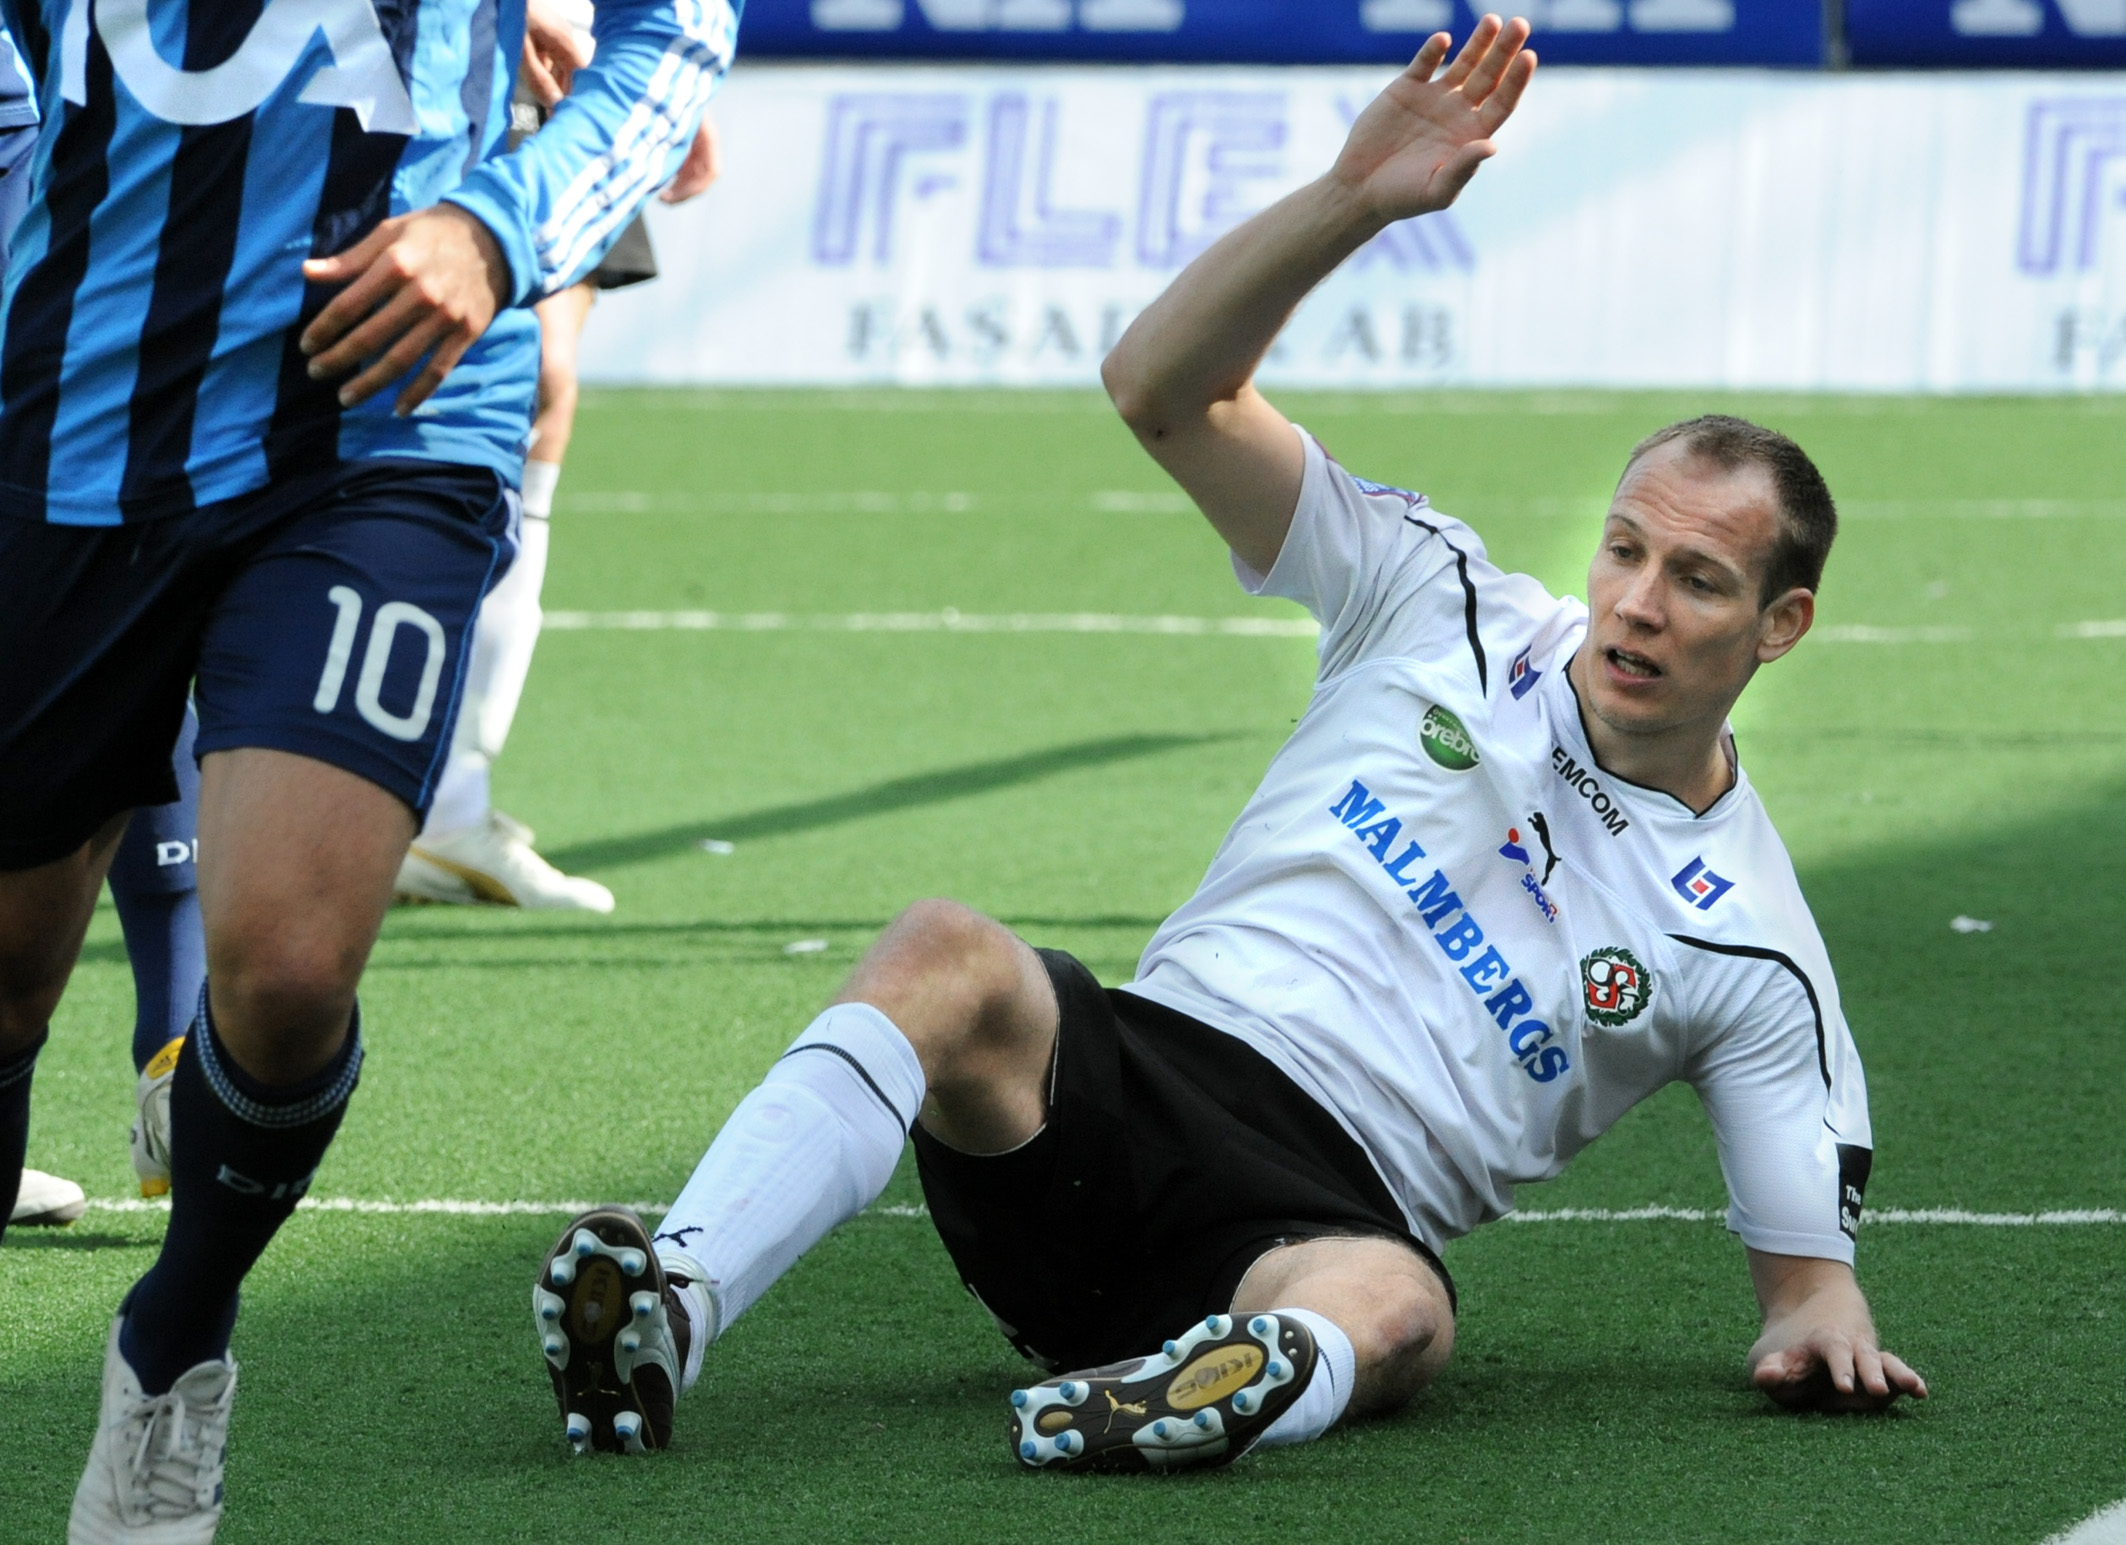 Kim Olsen, Örebro, Allsvenskan